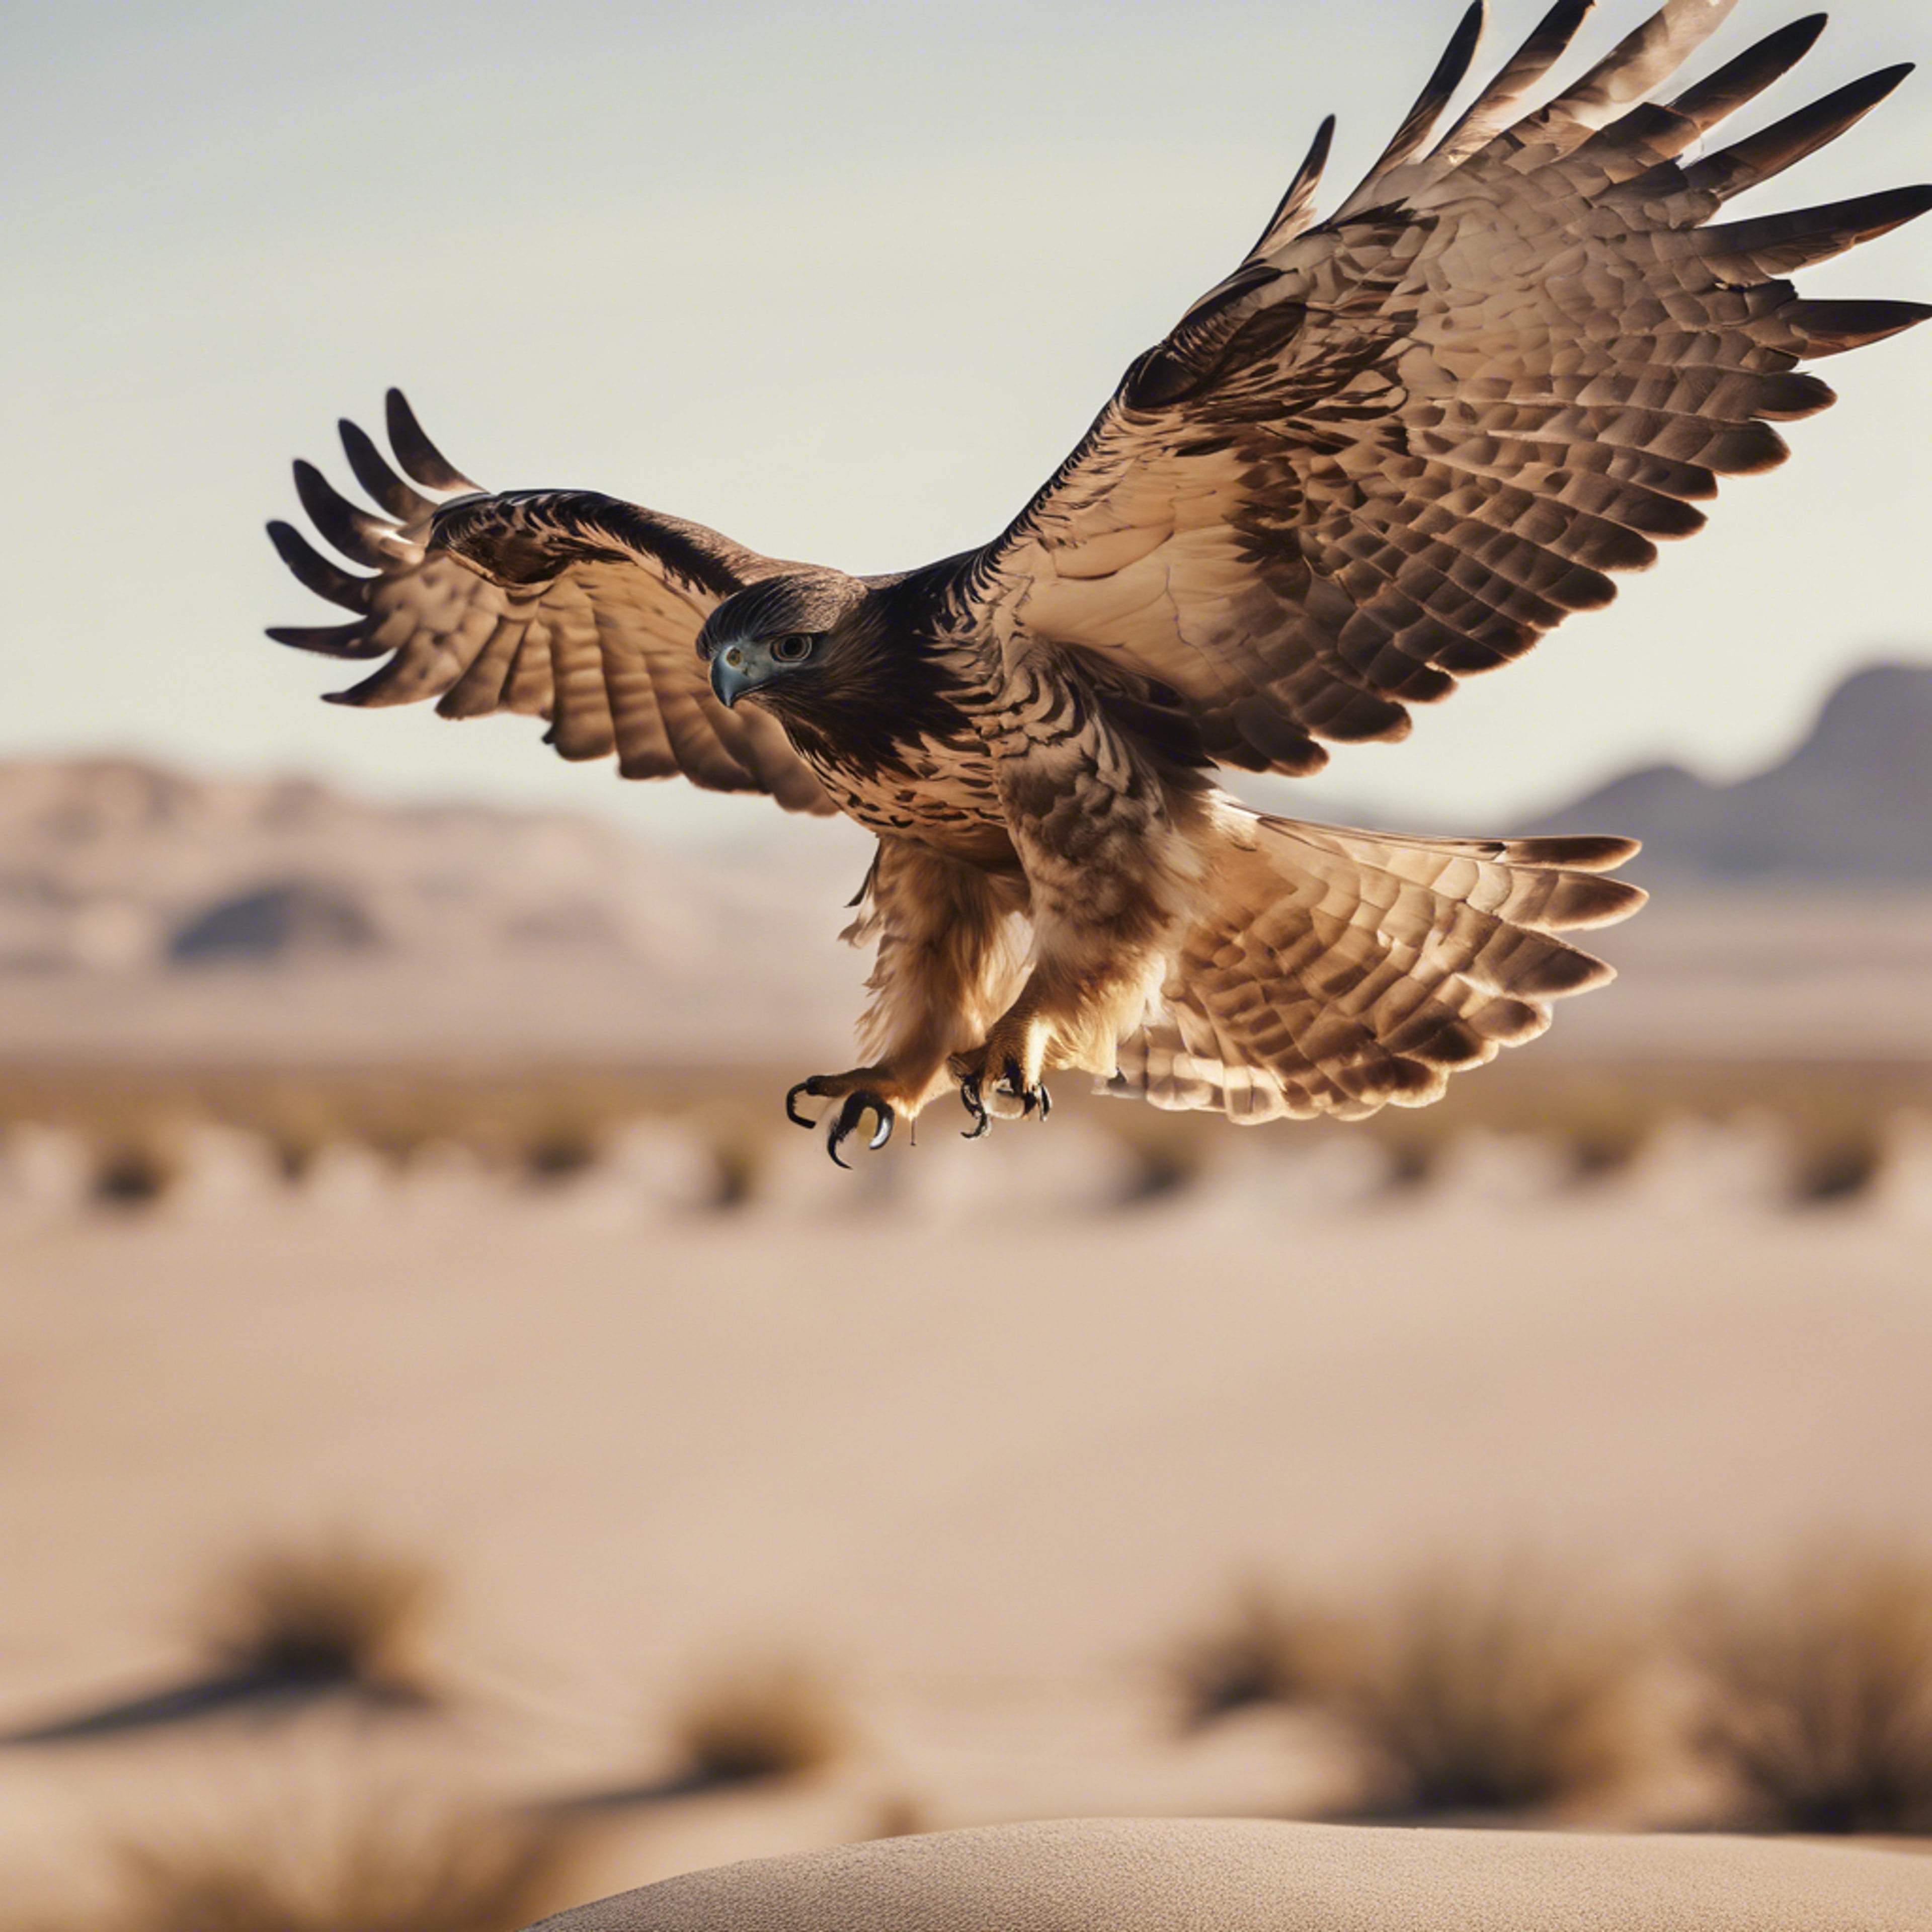 A hawk taking flight from its perch in a cool beige desert landscape. Tapet[f9770860966b45f09558]